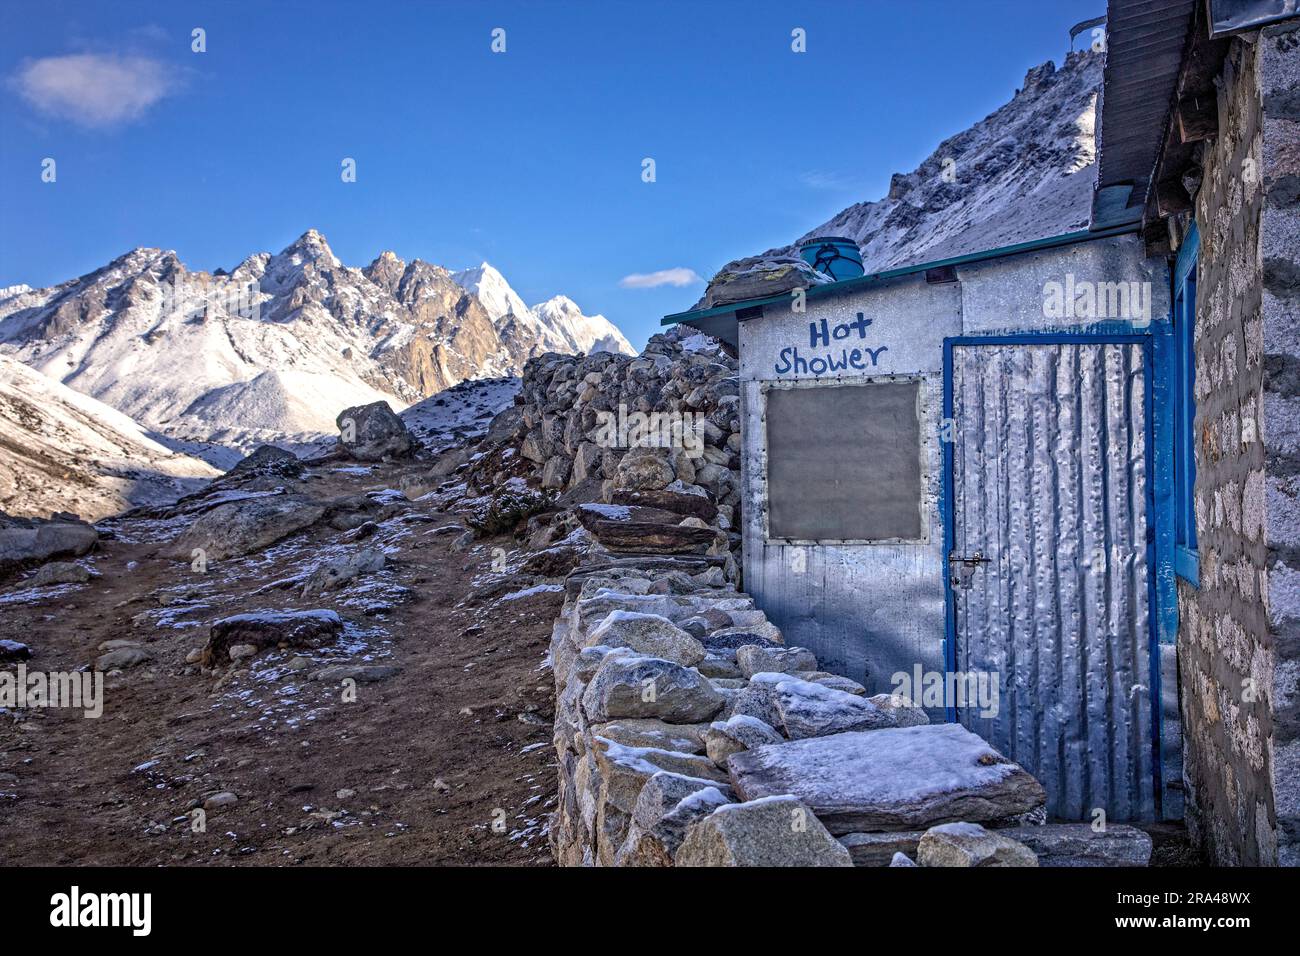 Le vestibule de douche dans un salon de thé dans la région de l'Everest au Népal. Banque D'Images